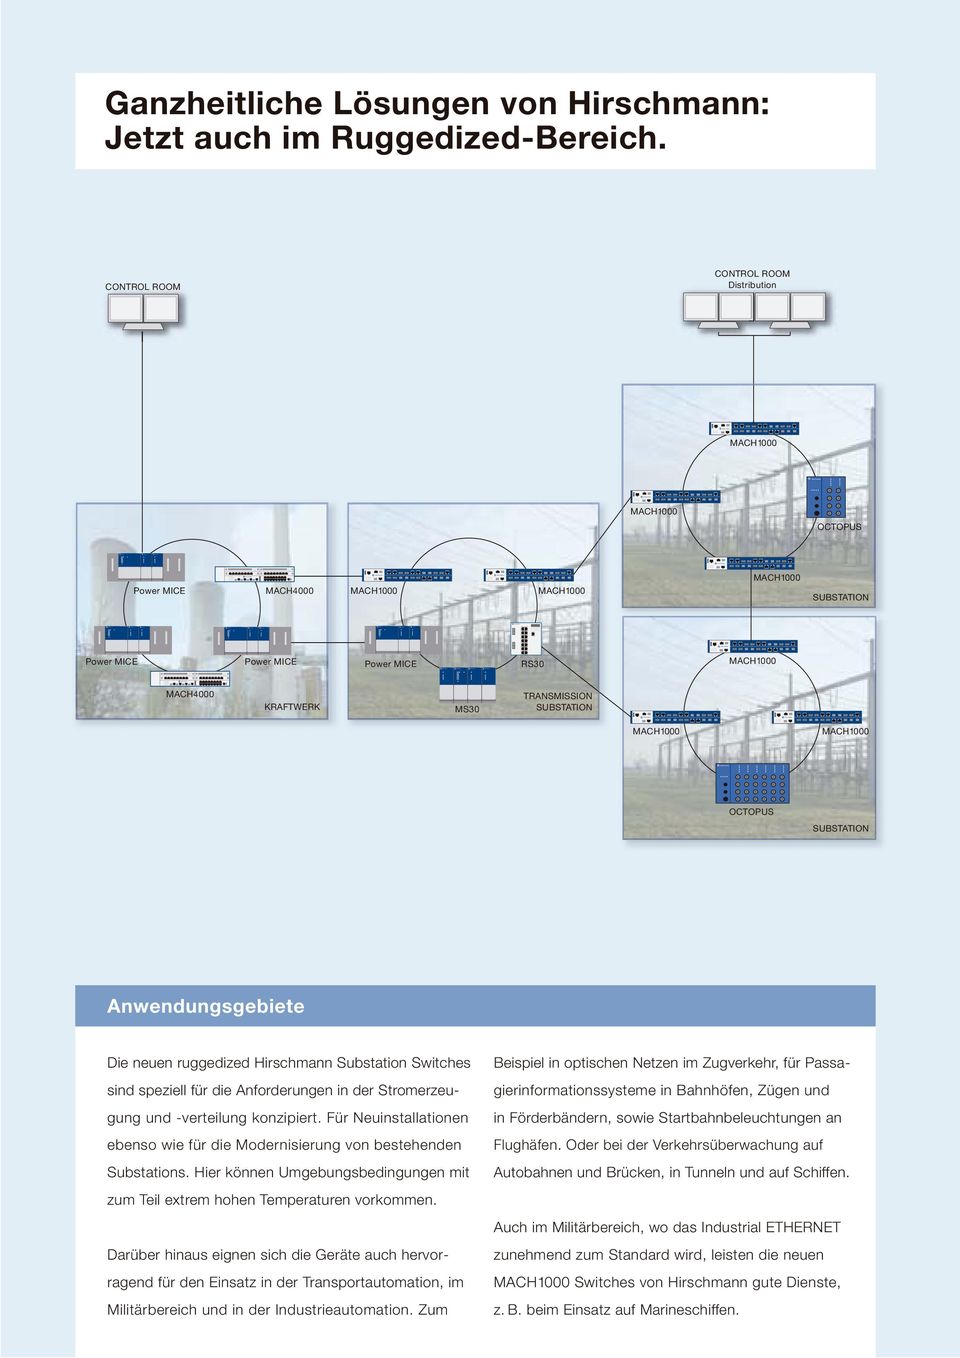 Die neuen ruggedized irschmann Substation Switches sind speziell für die Anforderungen in der Stromerzeugung und -verteilung konzipiert.